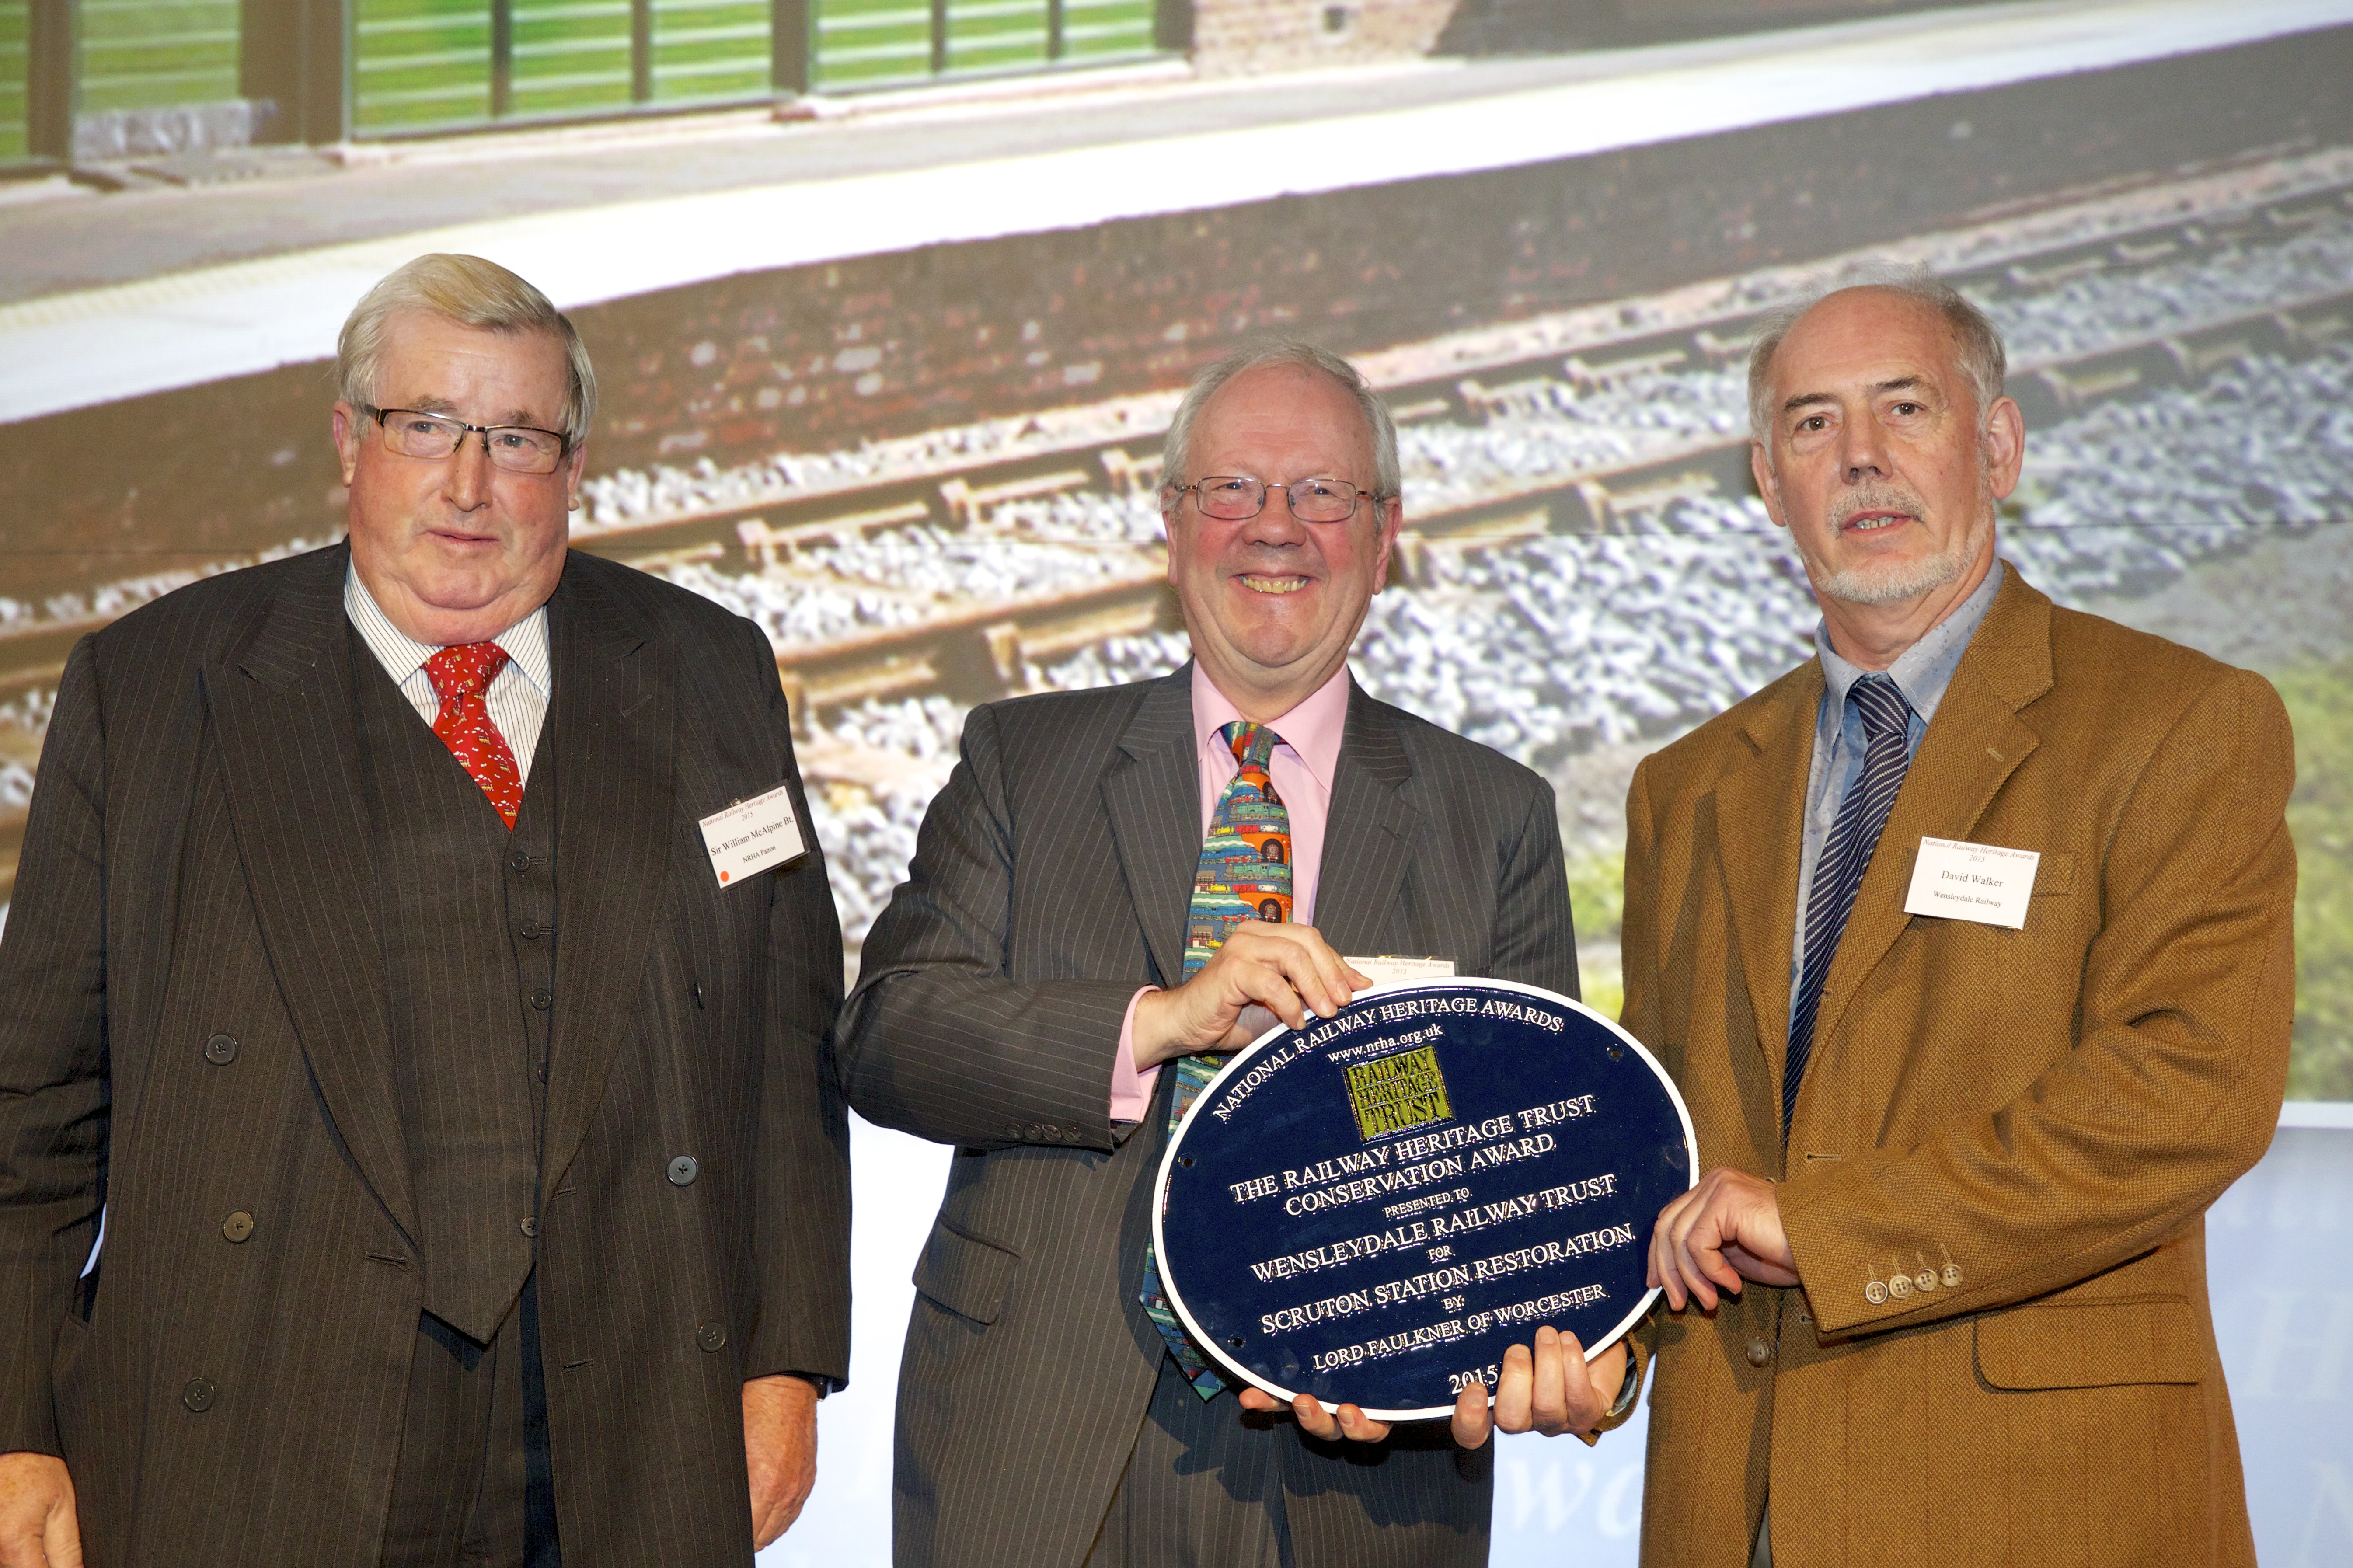 Railway Heritage Award for Wensleydale railway